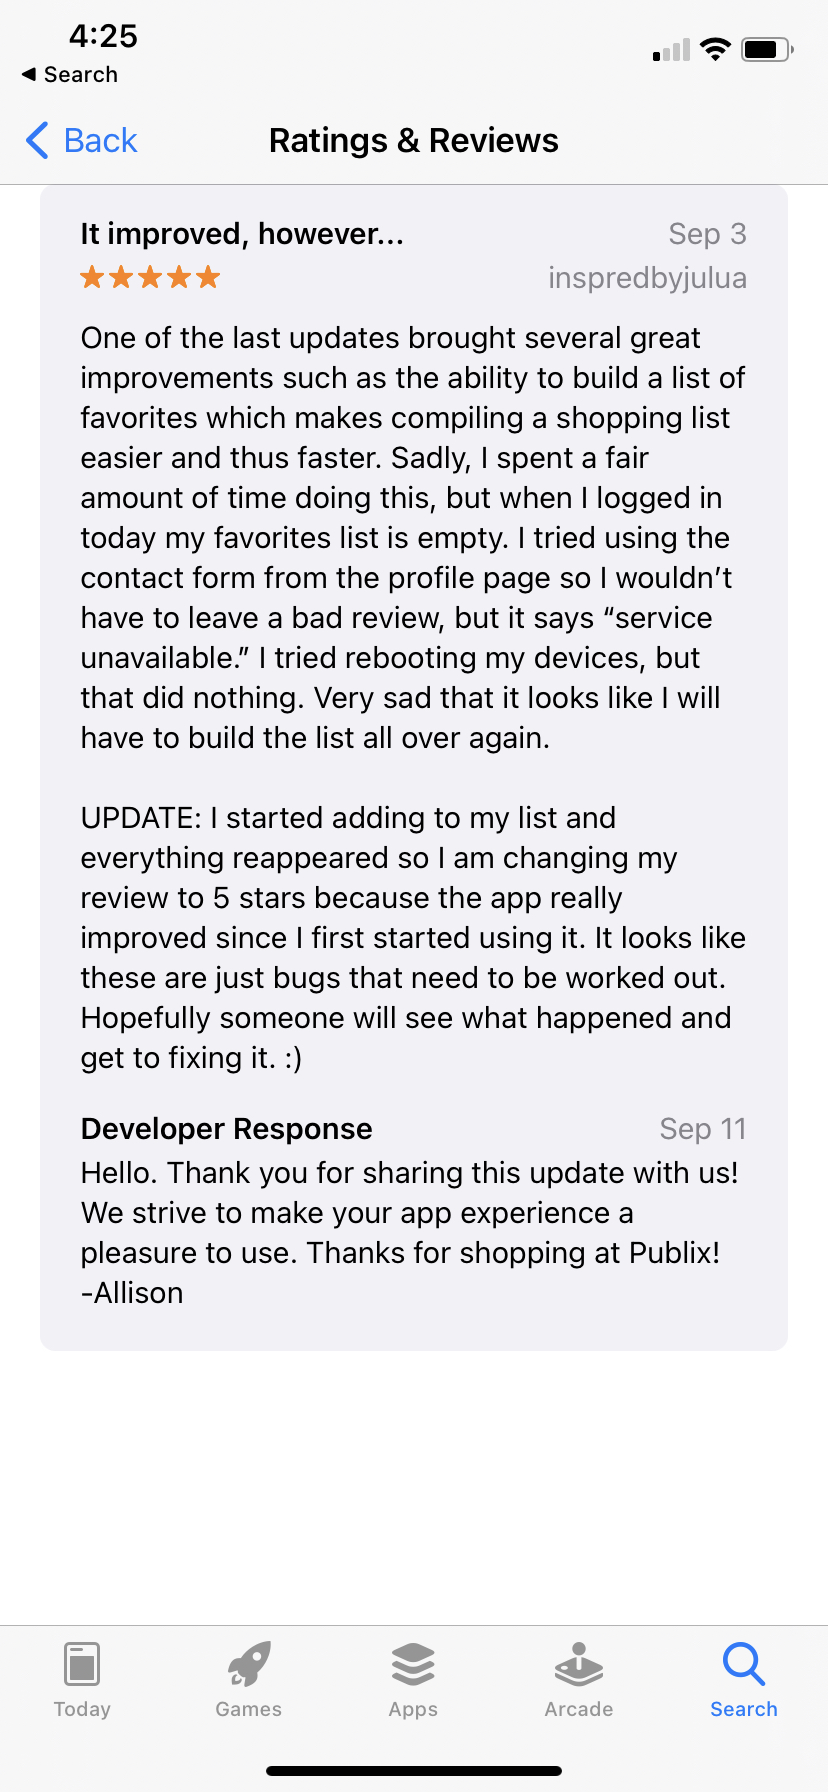 reviewer update after developer response